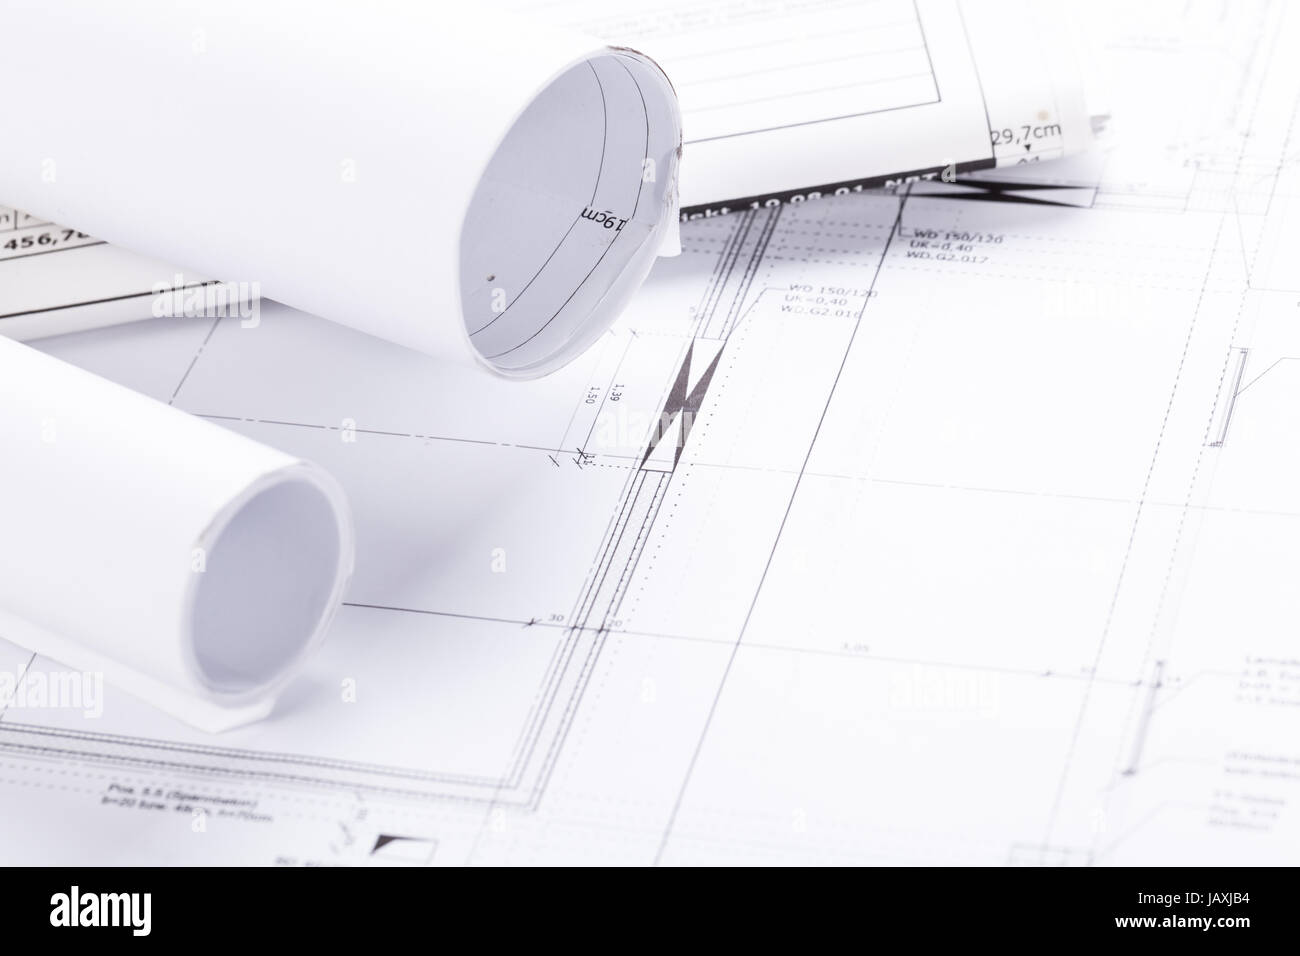 Architektur werkzeug stift lineal messzirkel objekte auf einem bauplan blueprint papier dettaglio Foto Stock